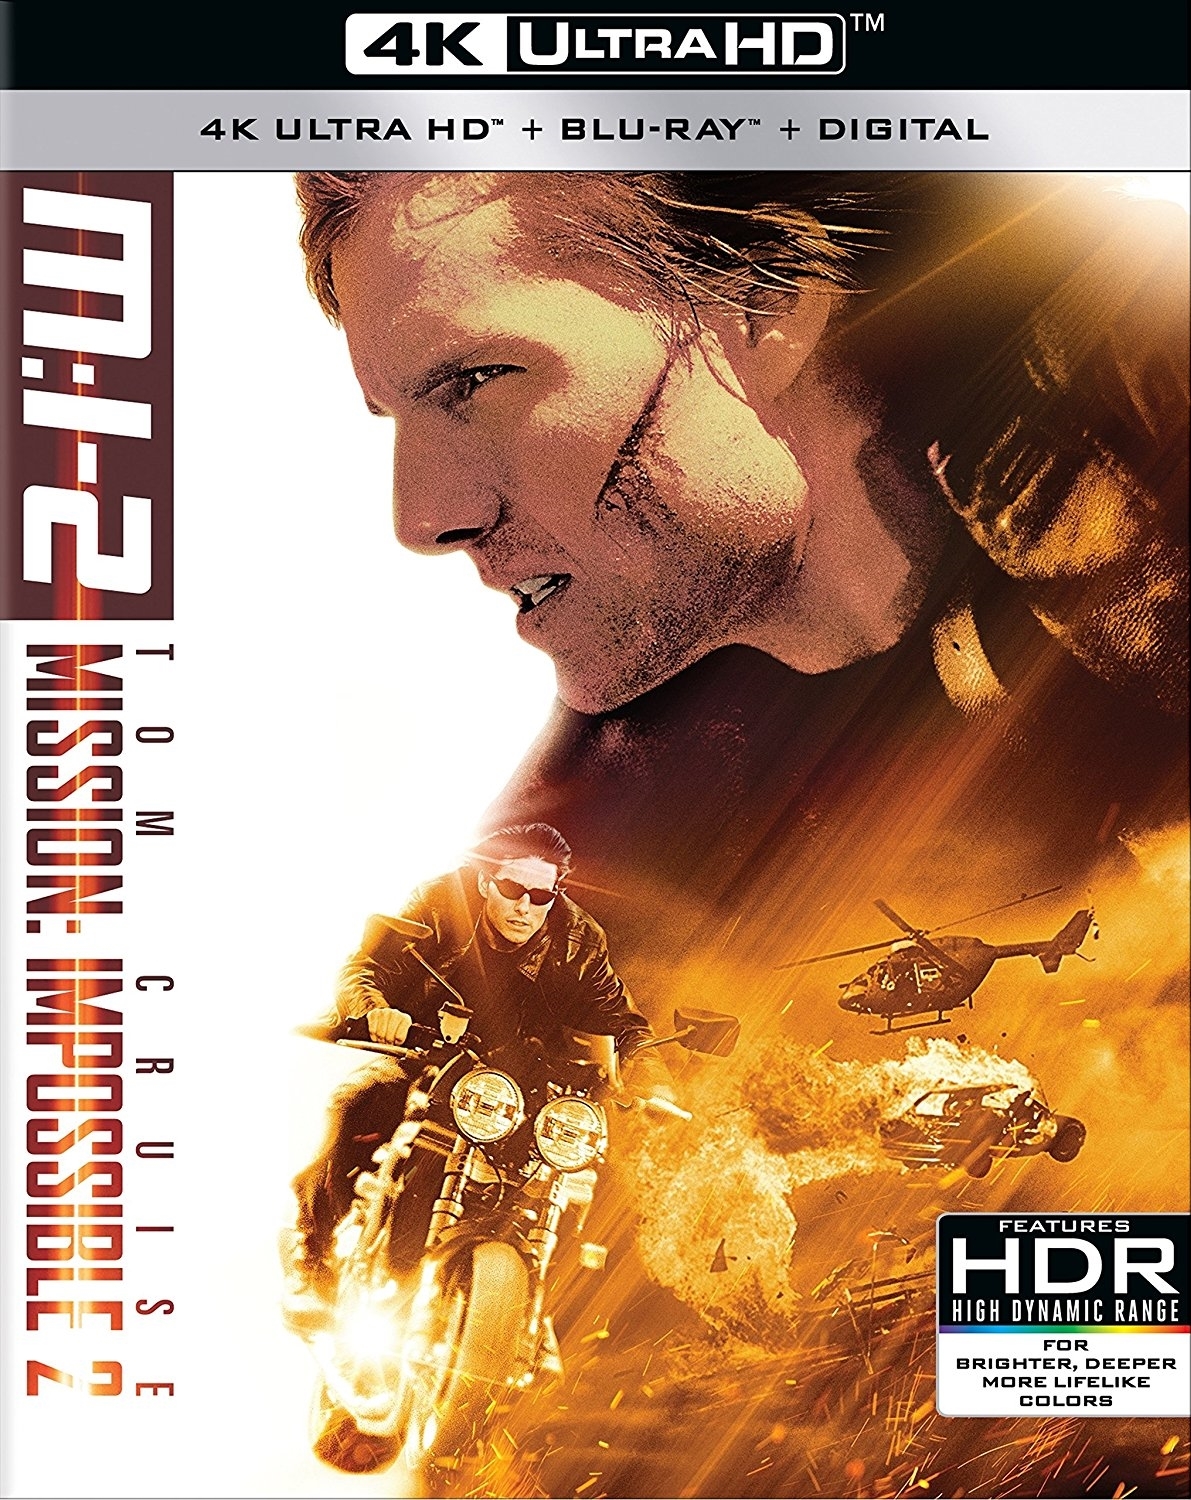 碟中谍Ⅱ 碟中谍2 [DIY次世代国配+简繁  简繁英双语字幕+国配字幕]杜比视界 Mission Impossible II 2000 UHD Blu-Ray 2160p HEVC TrueHD 5 1-lingf@OurBits[60.91GB]-1.jpg